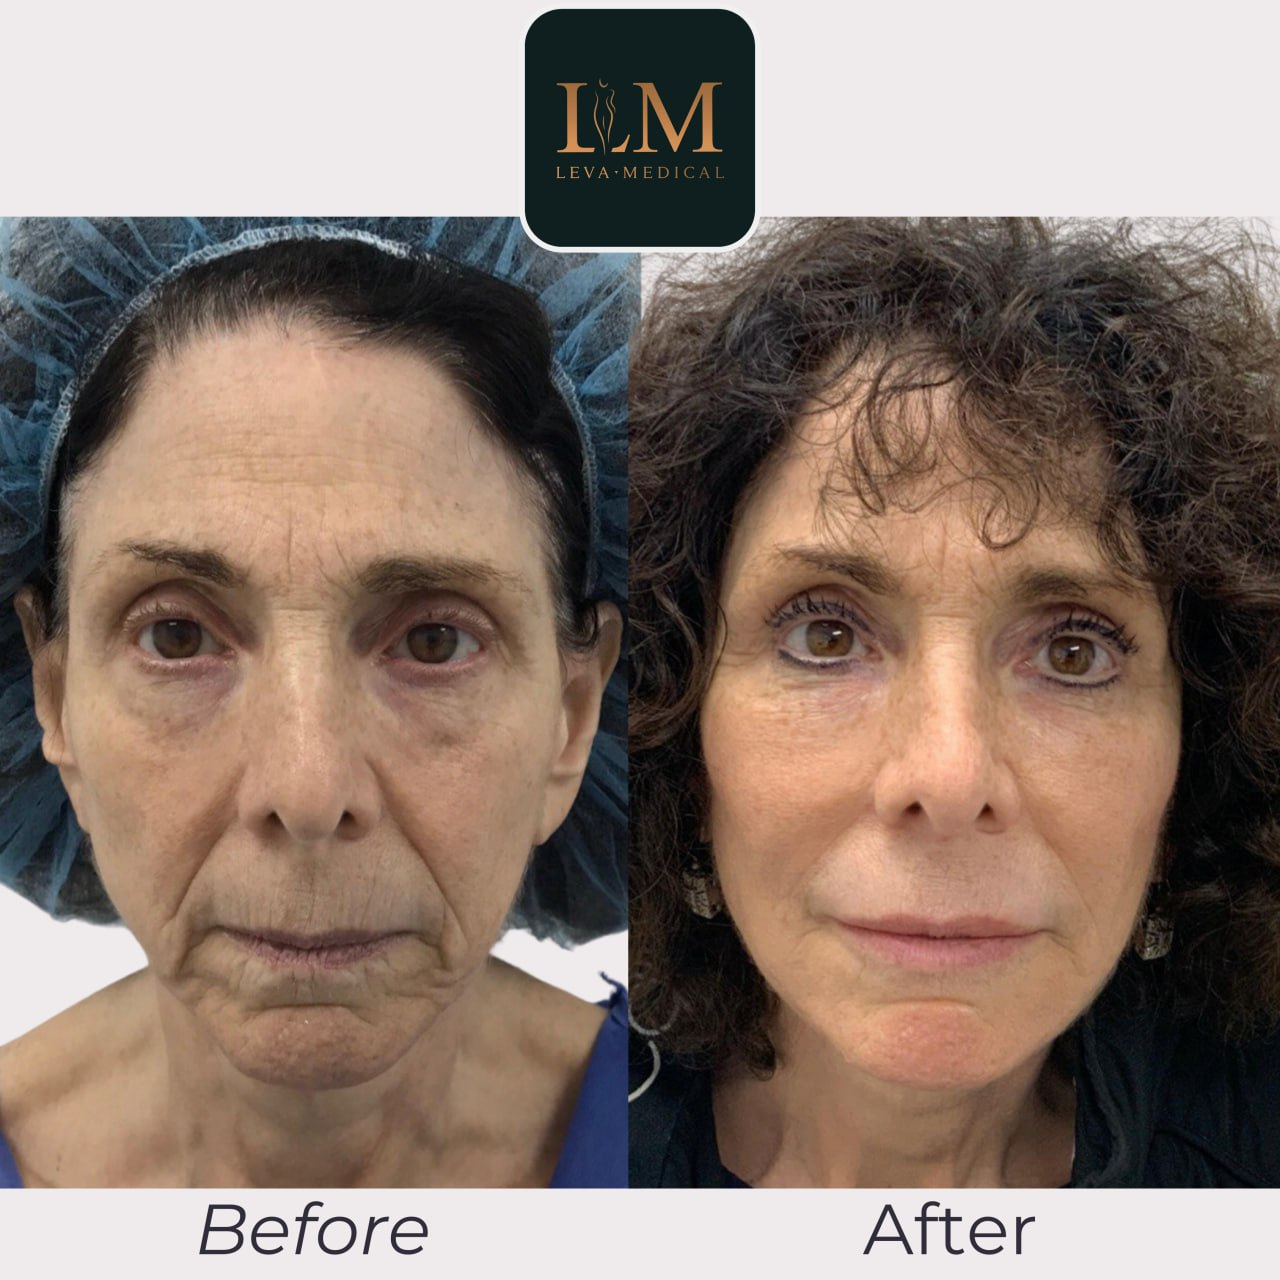 Foto de fotos de antes y después de pacientes con transferencia de grasa facial.